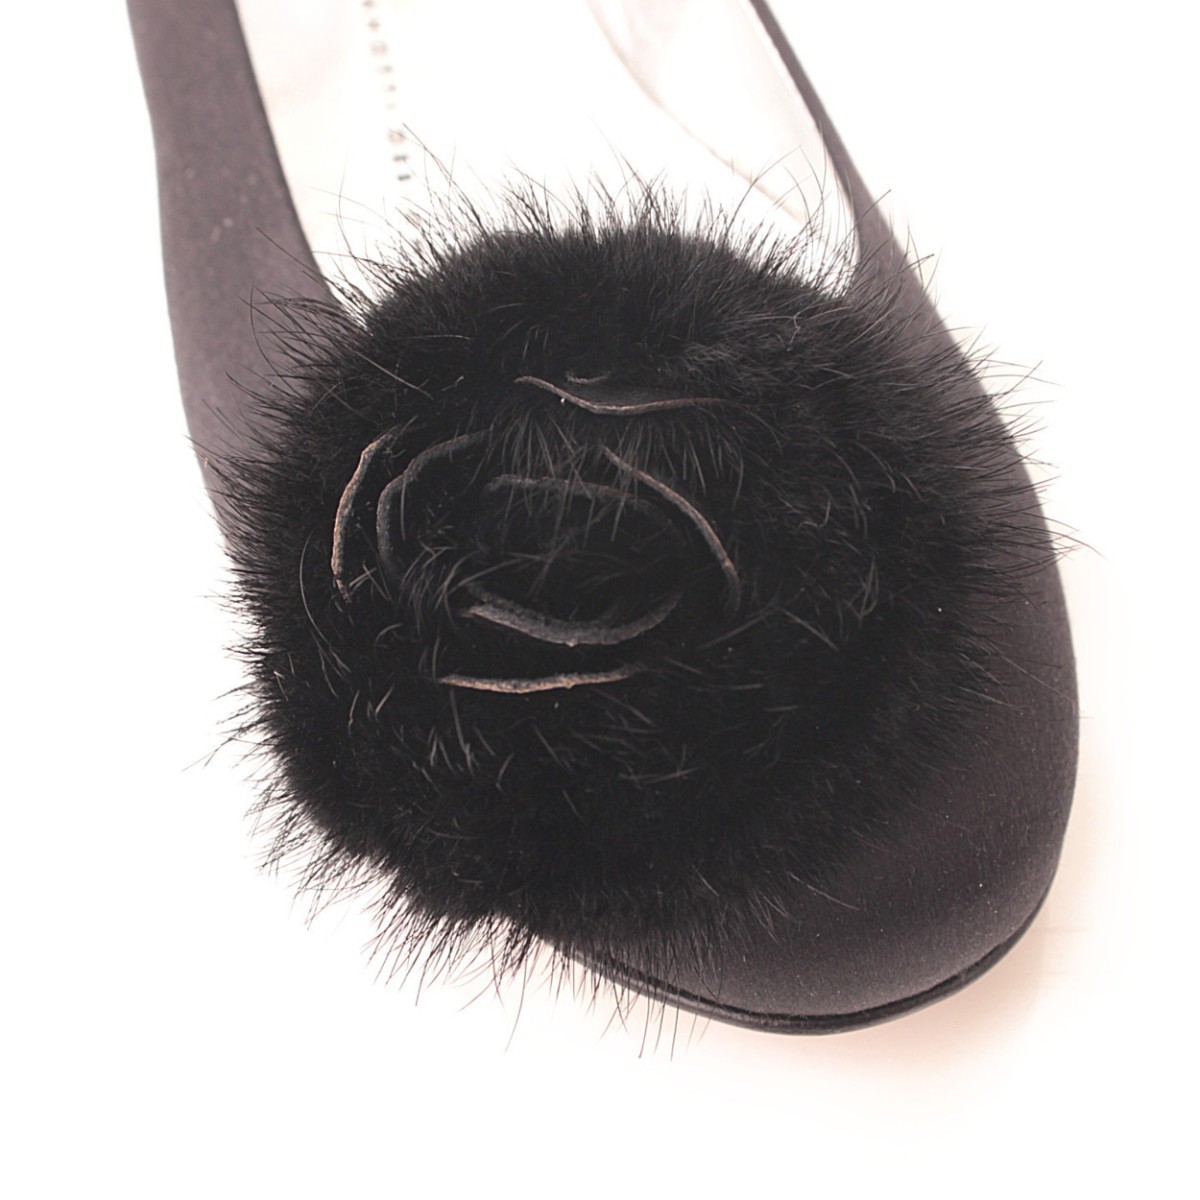 Giuseppe Zanotti атлас мех цветок плоская обувь туфли-лодочки черный 37 39100